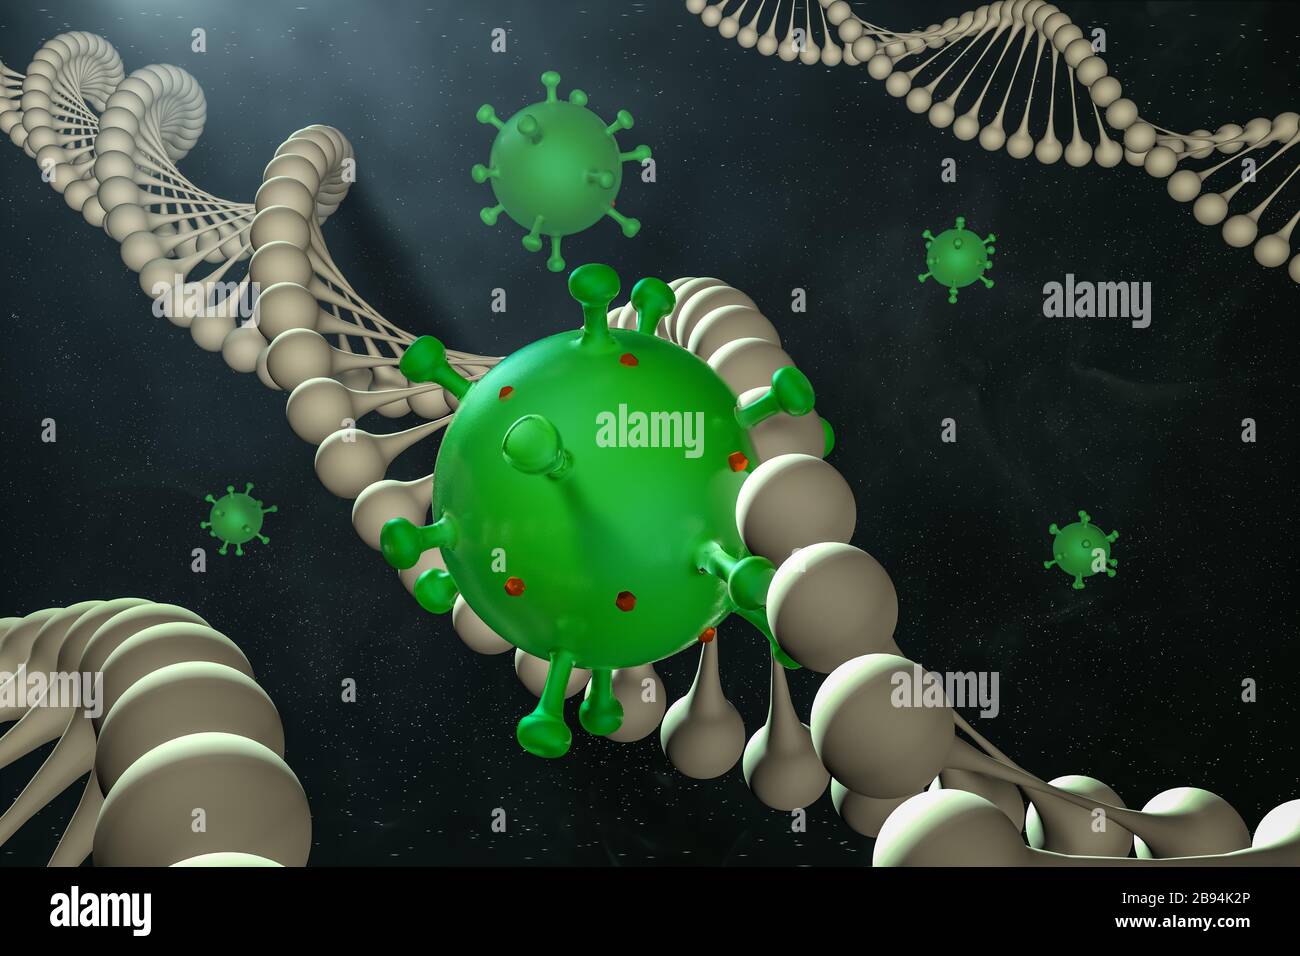 Illustration médicale abstraite modélisée par ordinateur du coronavirus Novel 2019-nCoV covid-19 dans la chaîne d'ADN. Concept de protection contre la pandémie de virus. Microbiologie Banque D'Images